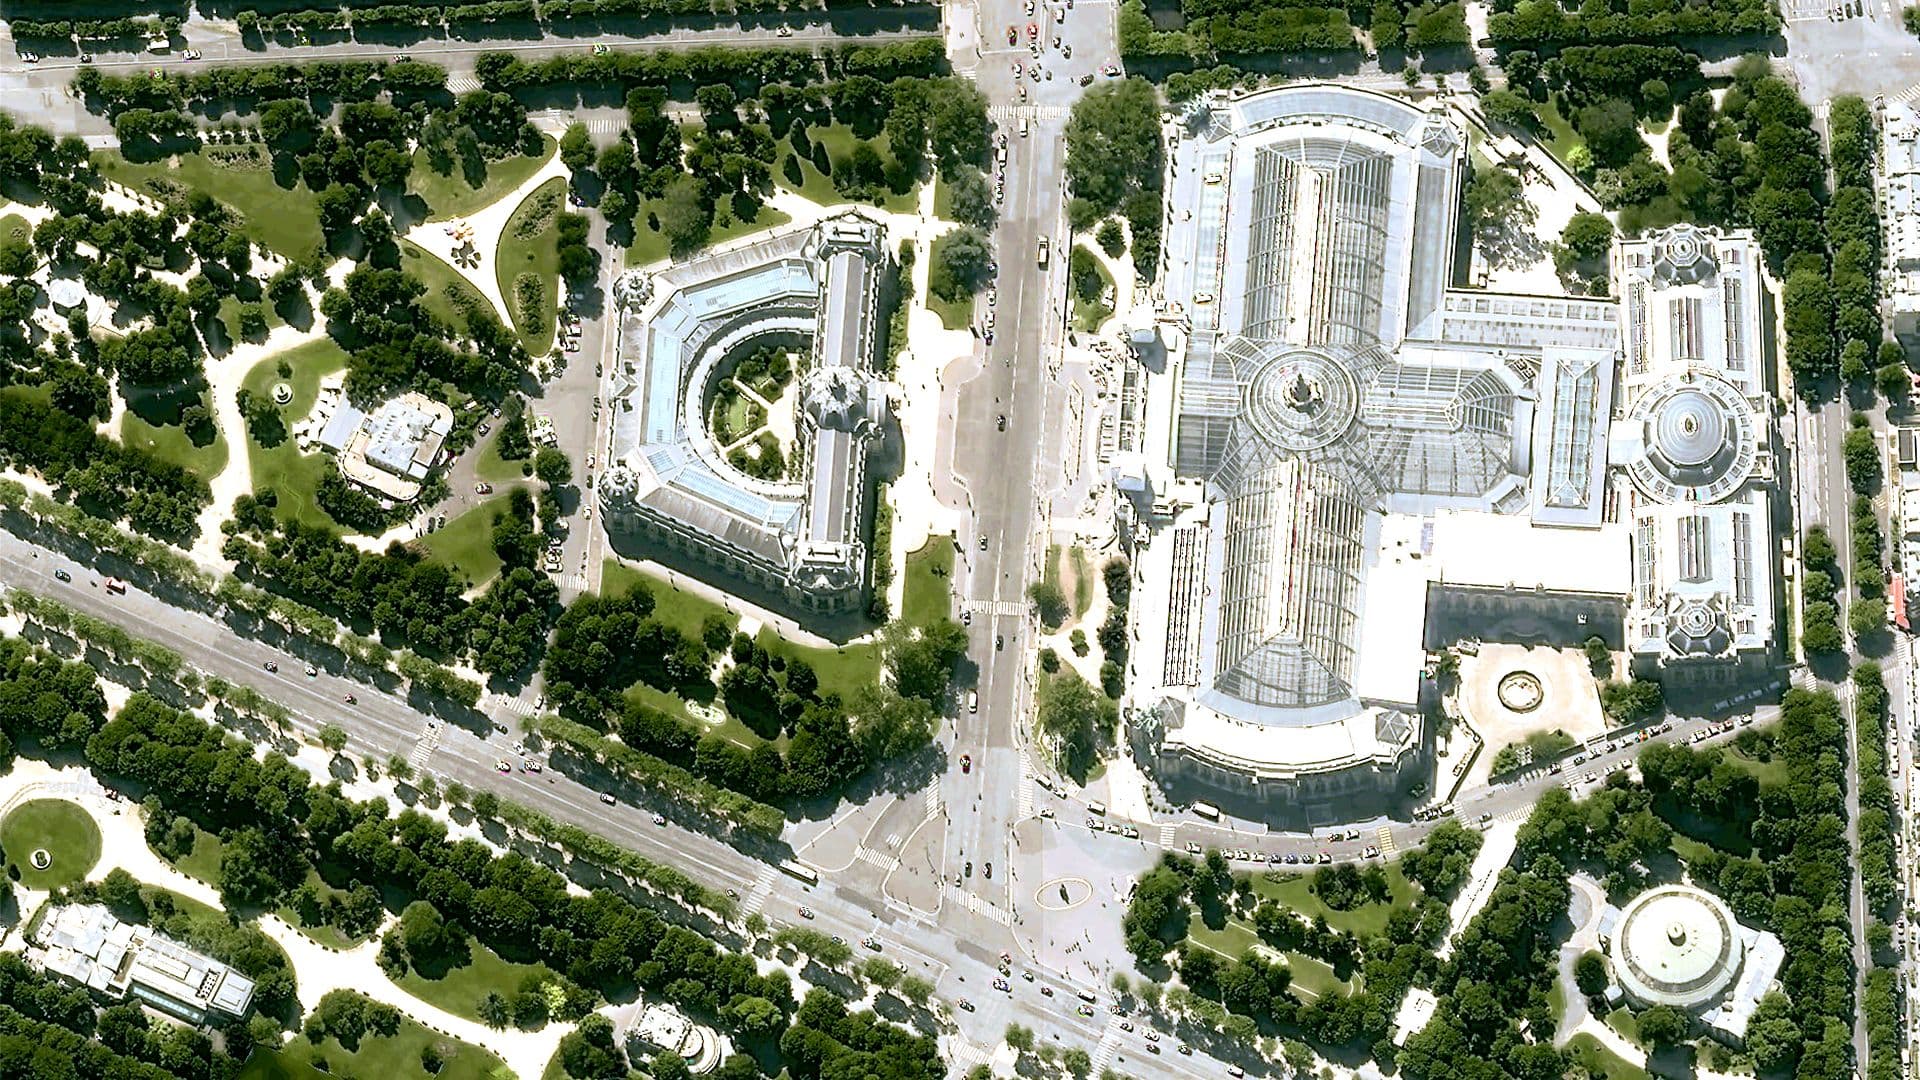 Pléiades Neo 30cm Imagery : Grand palais, paris France - 30cm resolution